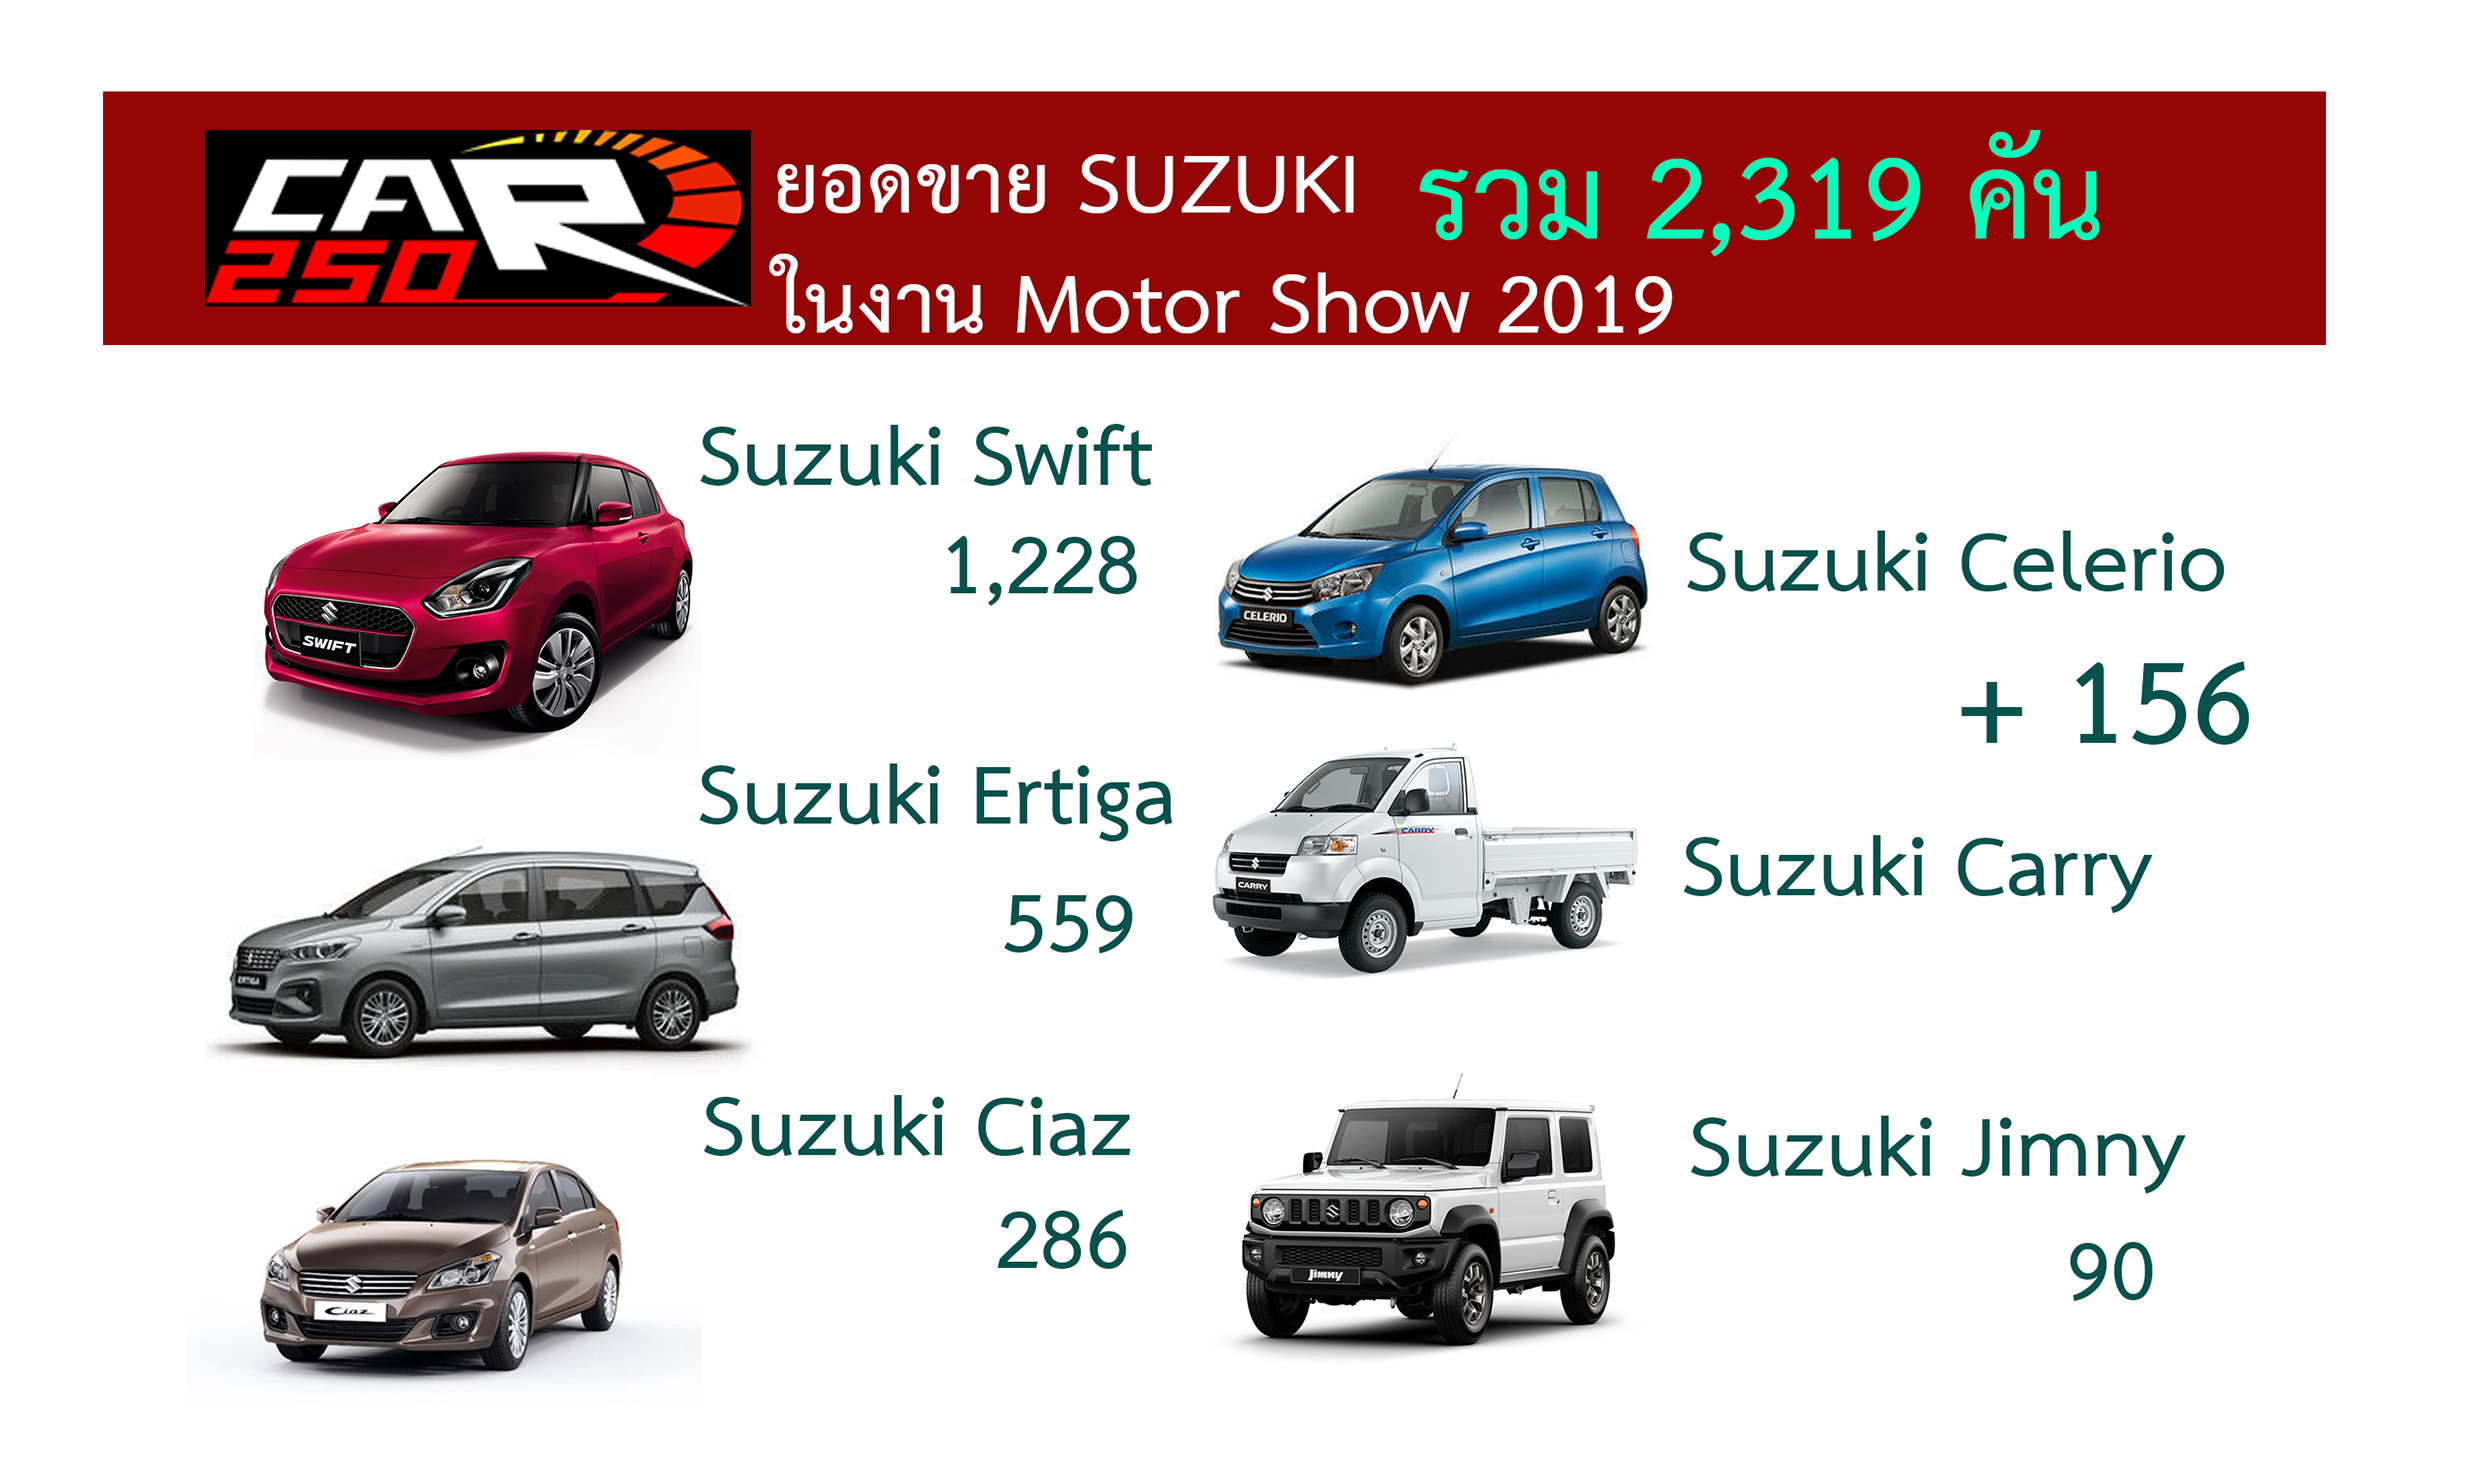 ยอดขาย SUZUKI 2,319 คันในงาน Motor Show 2019